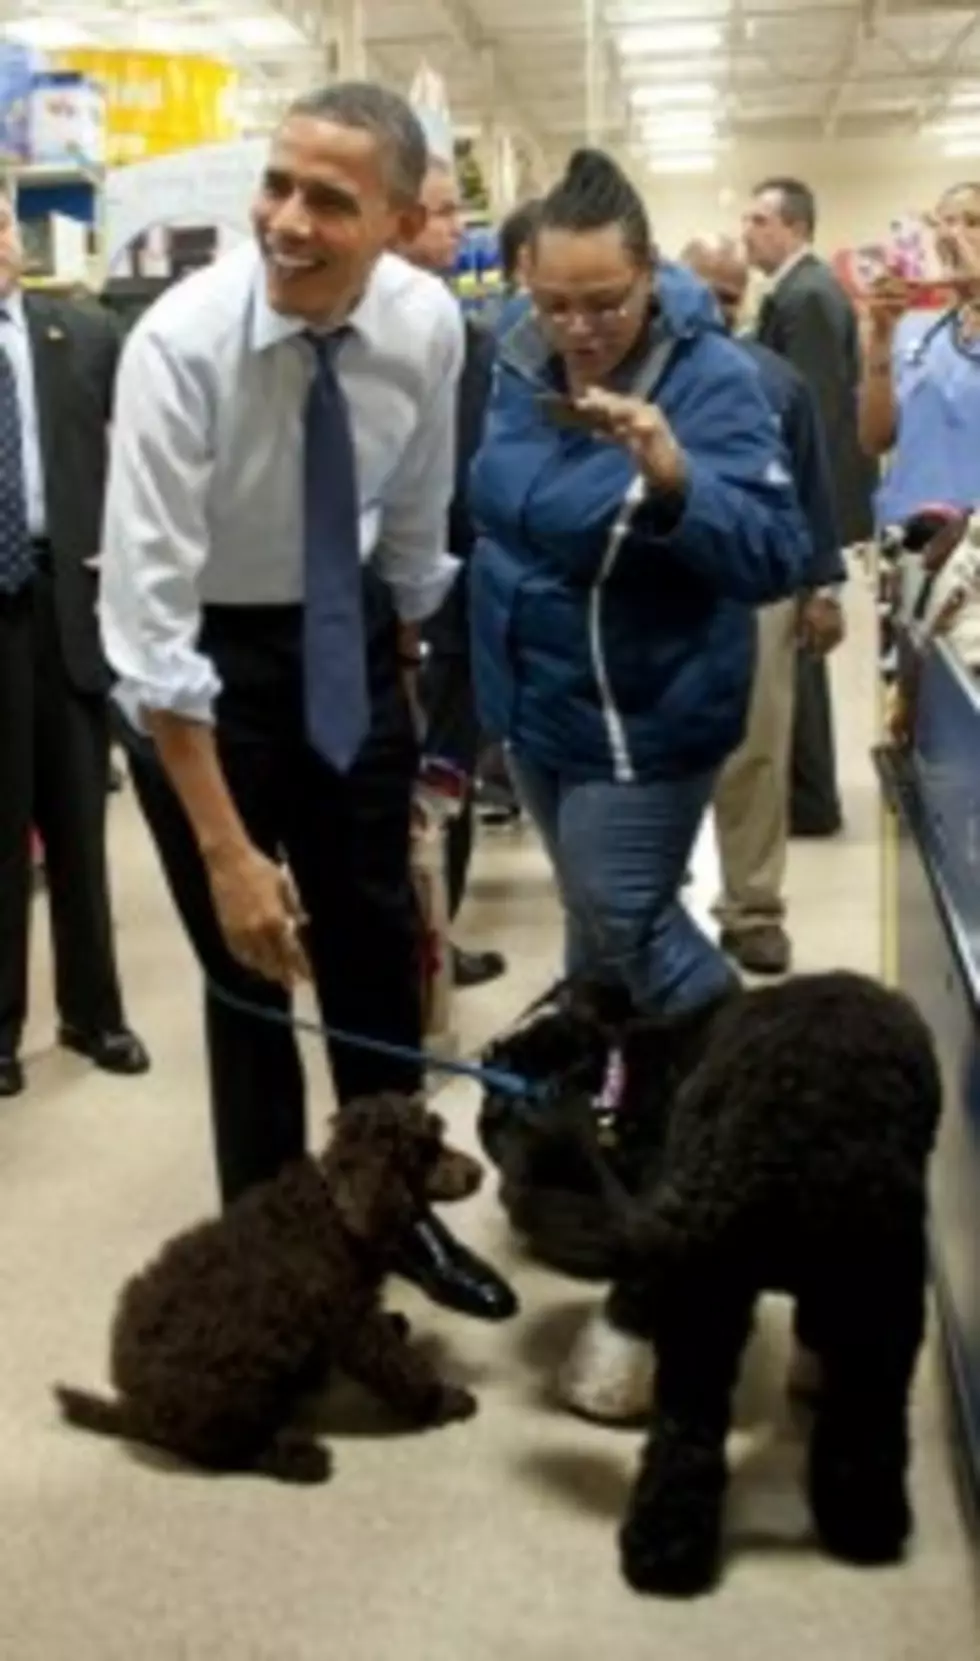 Obama Admits to Eating Dog, Was It Bo Obama?